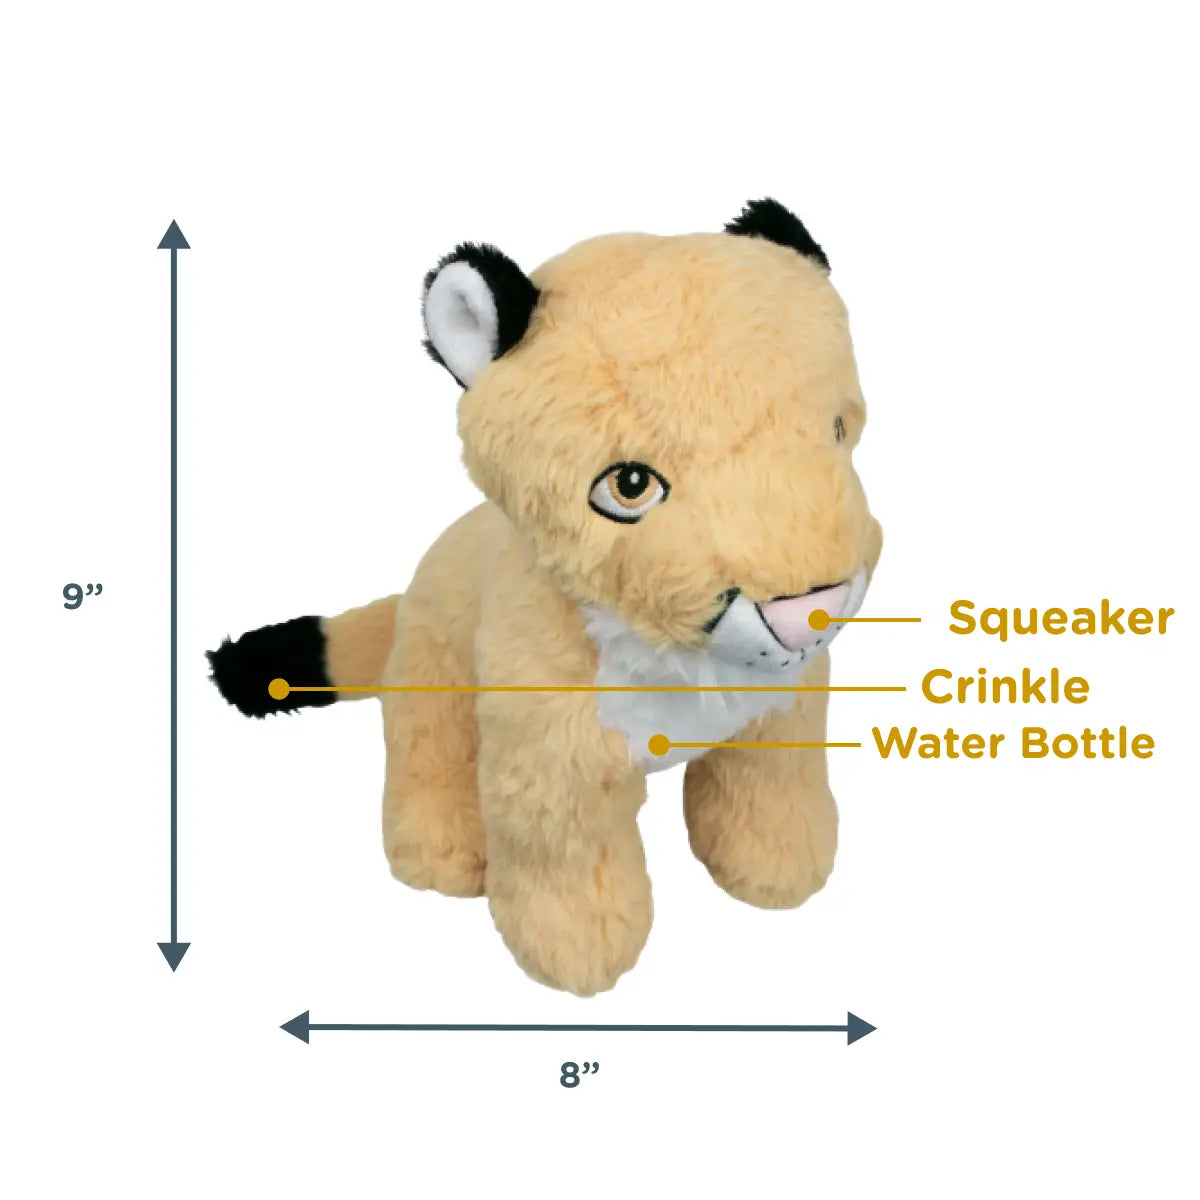 Mountain Lion W/ Water Bottle Crunch, Crinkle & Squeaker